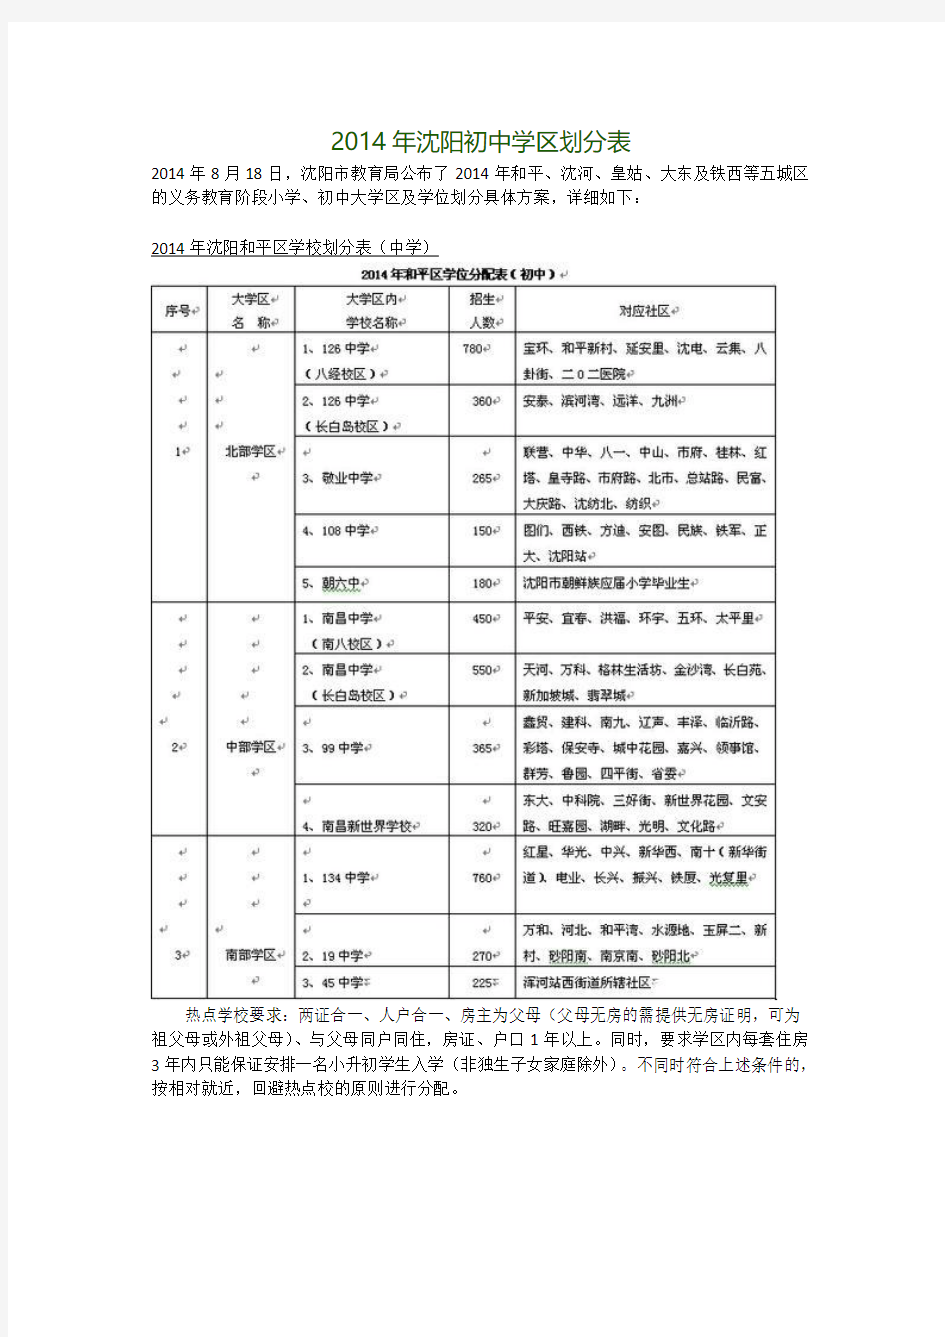 2014年沈阳初中学区划分表